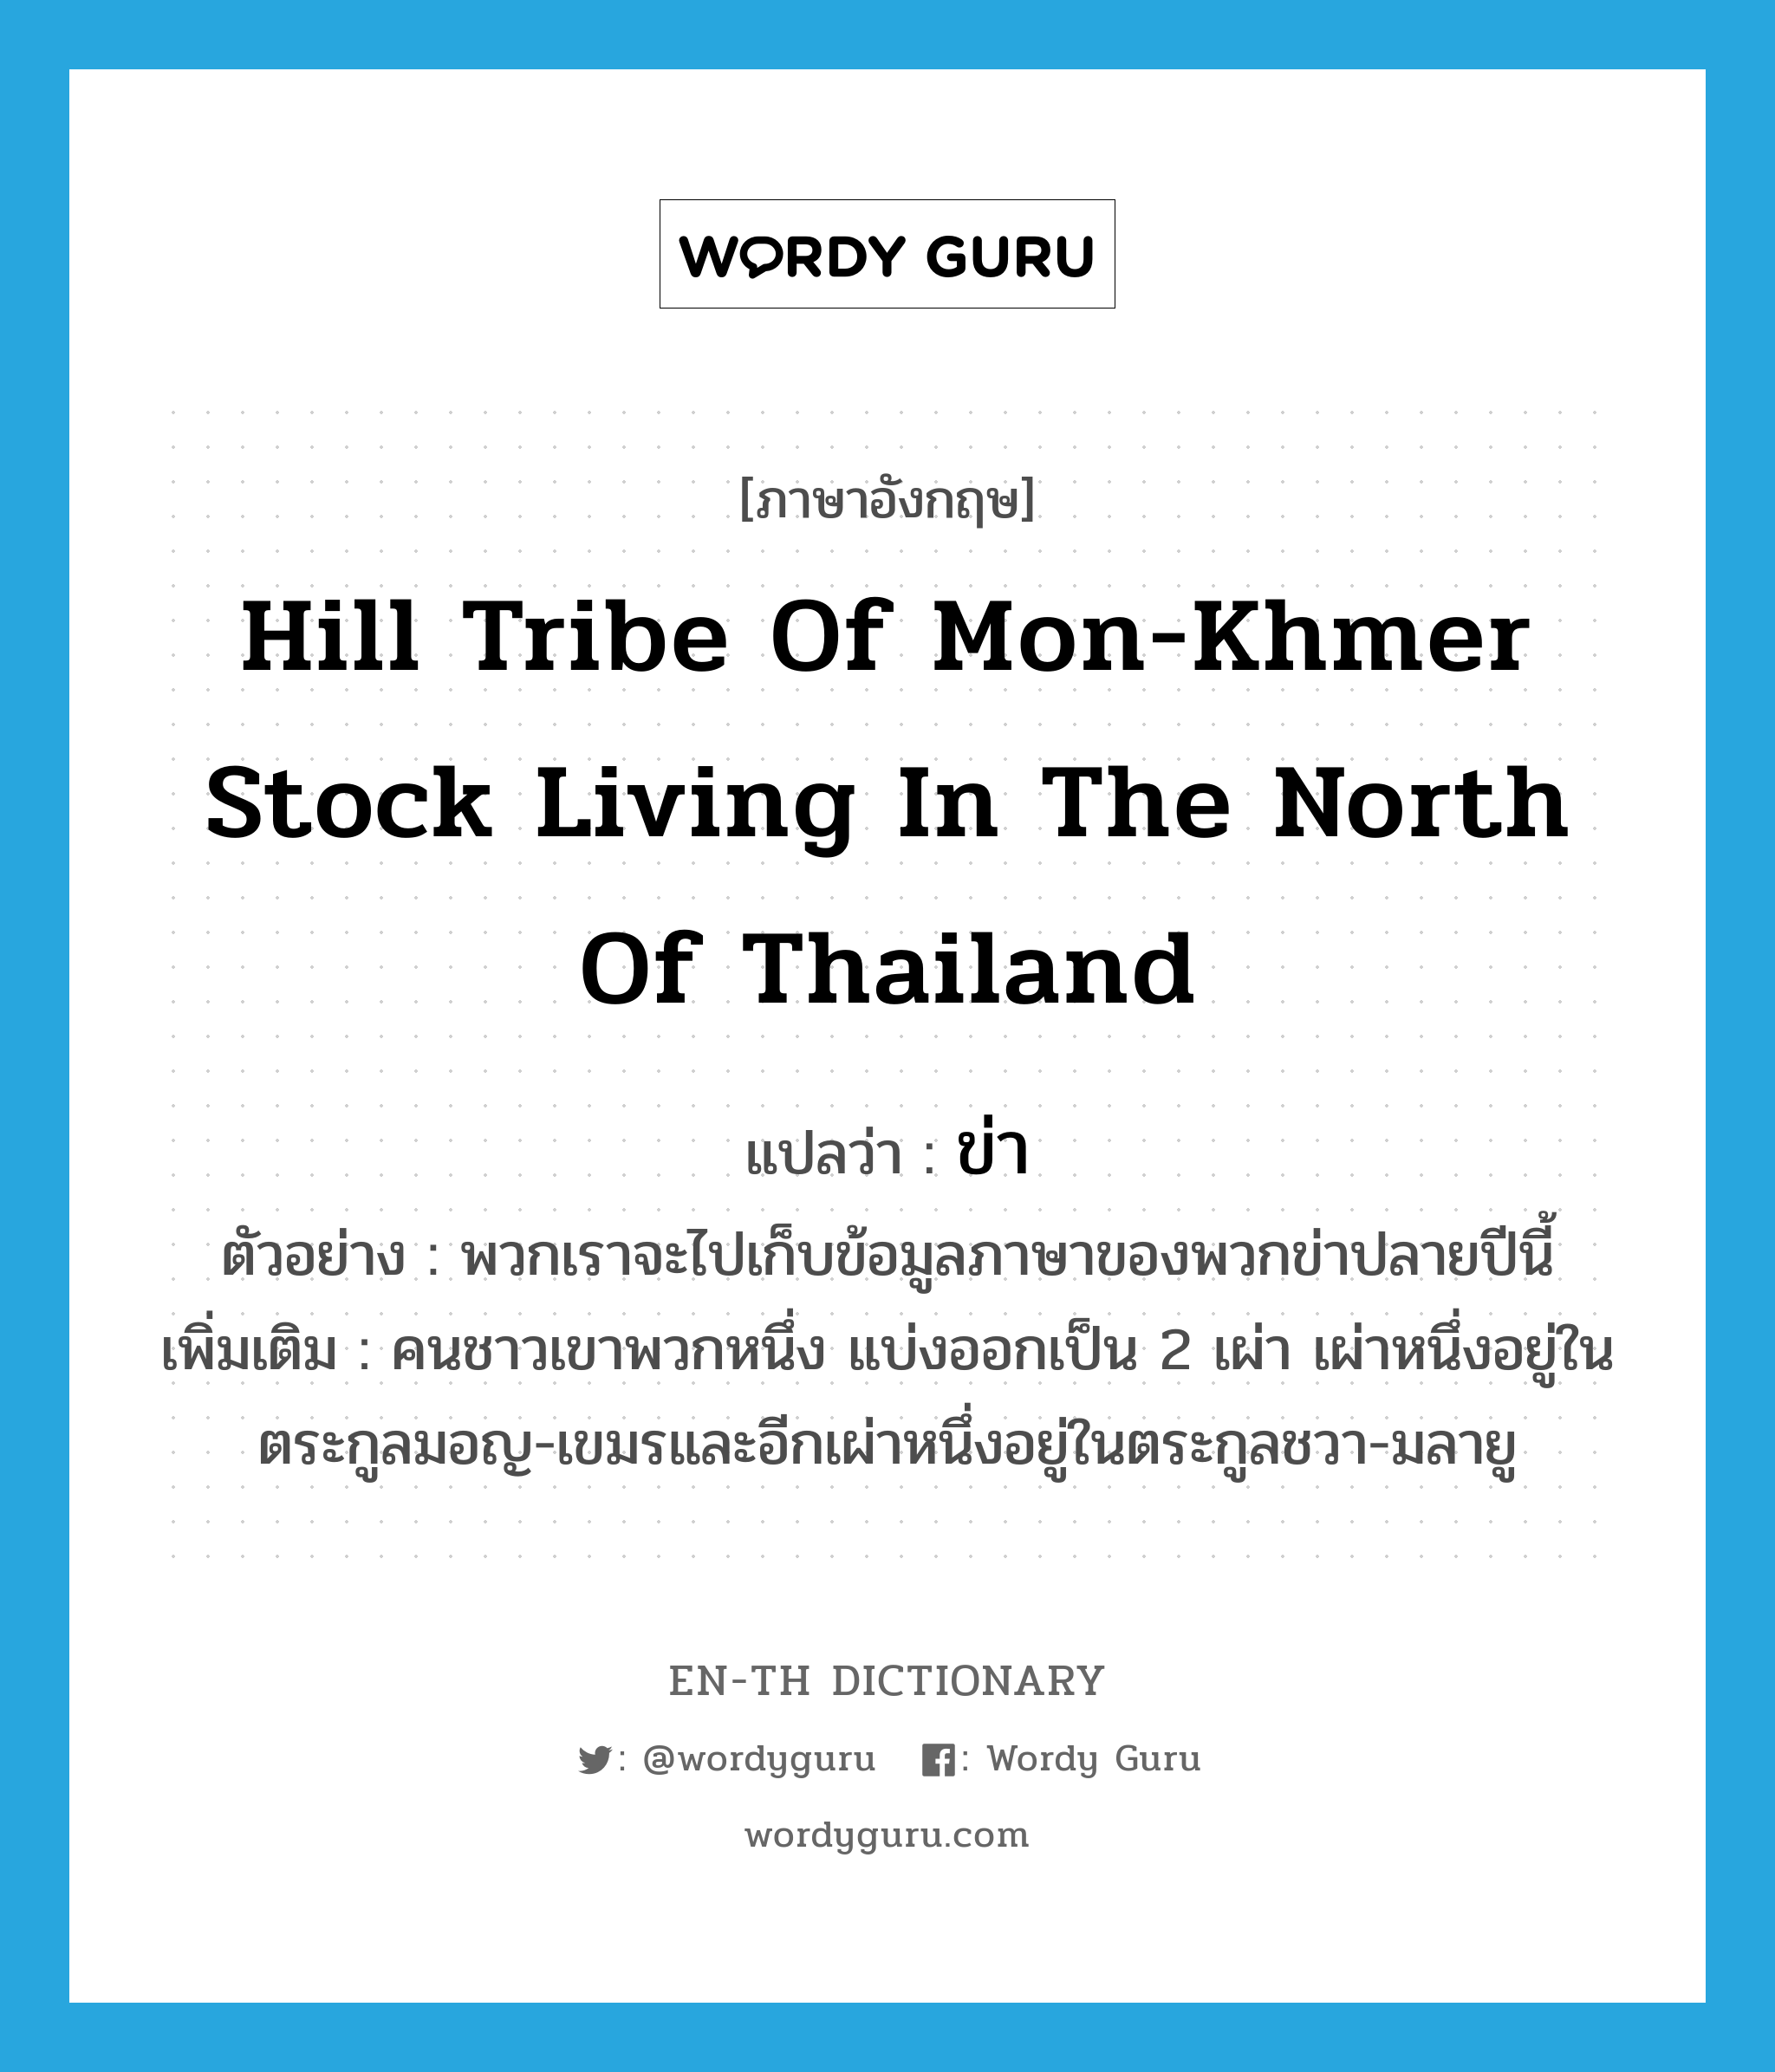 ข่า ภาษาอังกฤษ?, คำศัพท์ภาษาอังกฤษ ข่า แปลว่า hill tribe of Mon-Khmer stock living in the north of Thailand ประเภท N ตัวอย่าง พวกเราจะไปเก็บข้อมูลภาษาของพวกข่าปลายปีนี้ เพิ่มเติม คนชาวเขาพวกหนึ่ง แบ่งออกเป็น 2 เผ่า เผ่าหนึ่งอยู่ในตระกูลมอญ-เขมรและอีกเผ่าหนึ่งอยู่ในตระกูลชวา-มลายู หมวด N